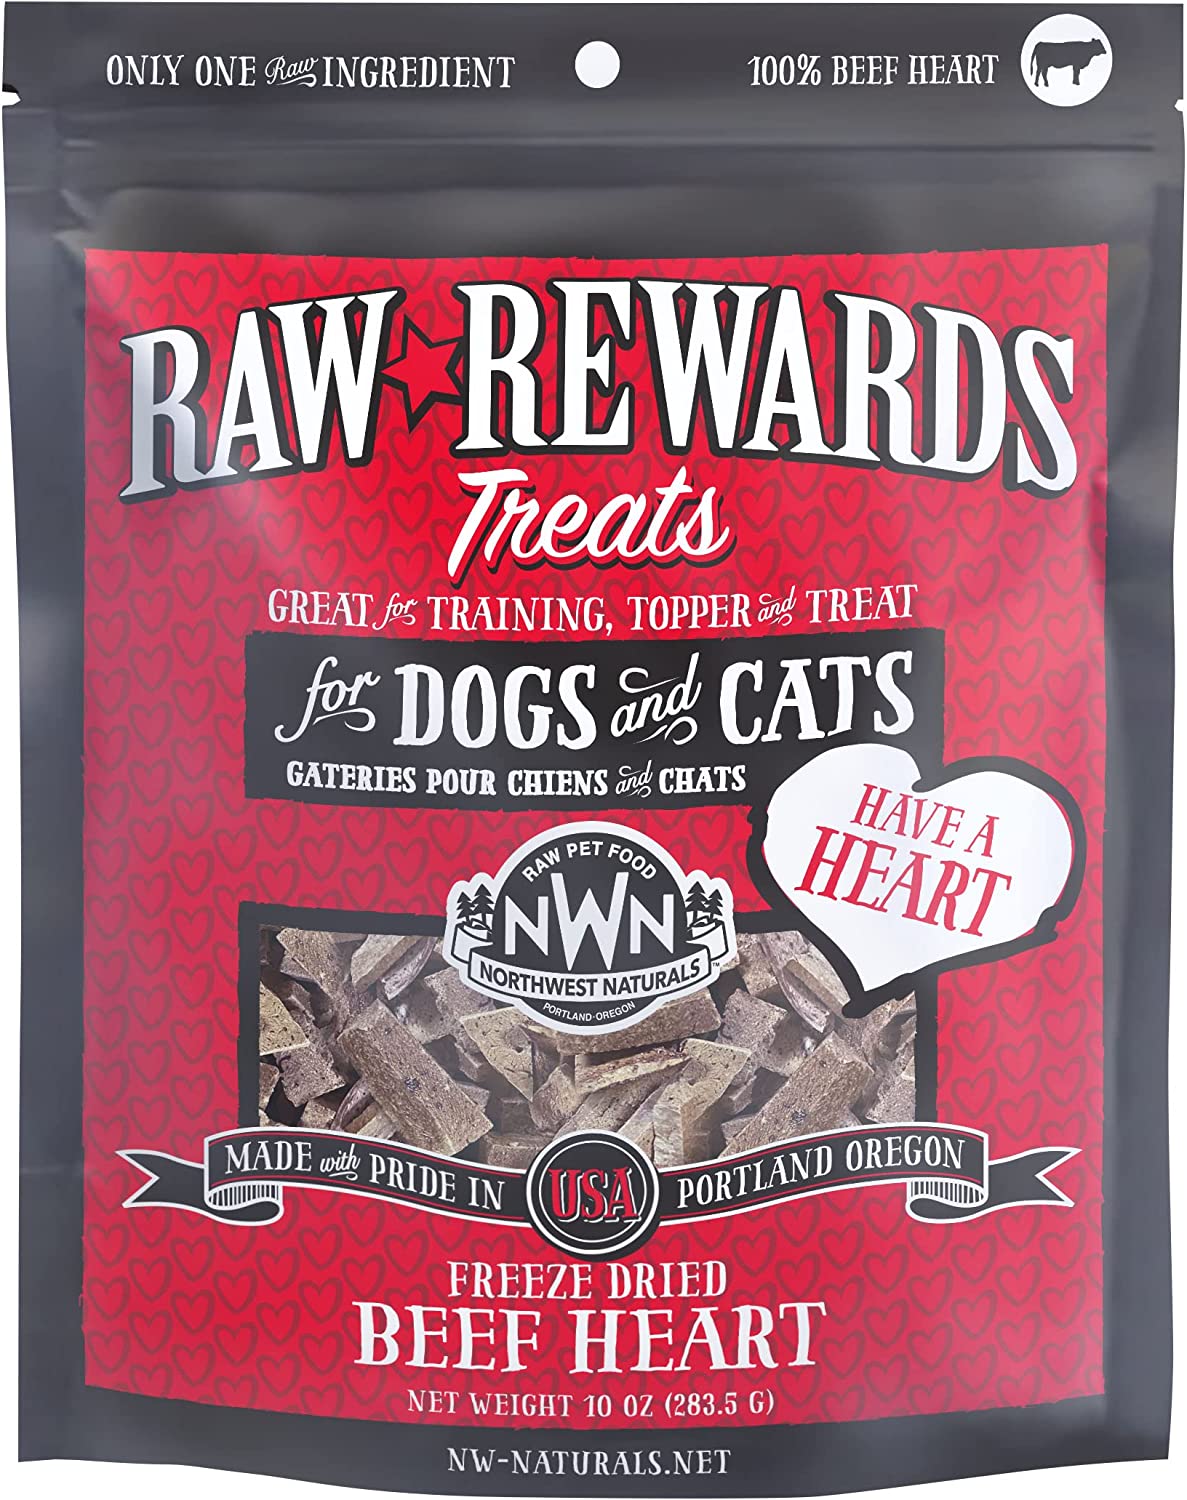 Raw Rewards Freeze Dried Minnows Cat & Dog Treats